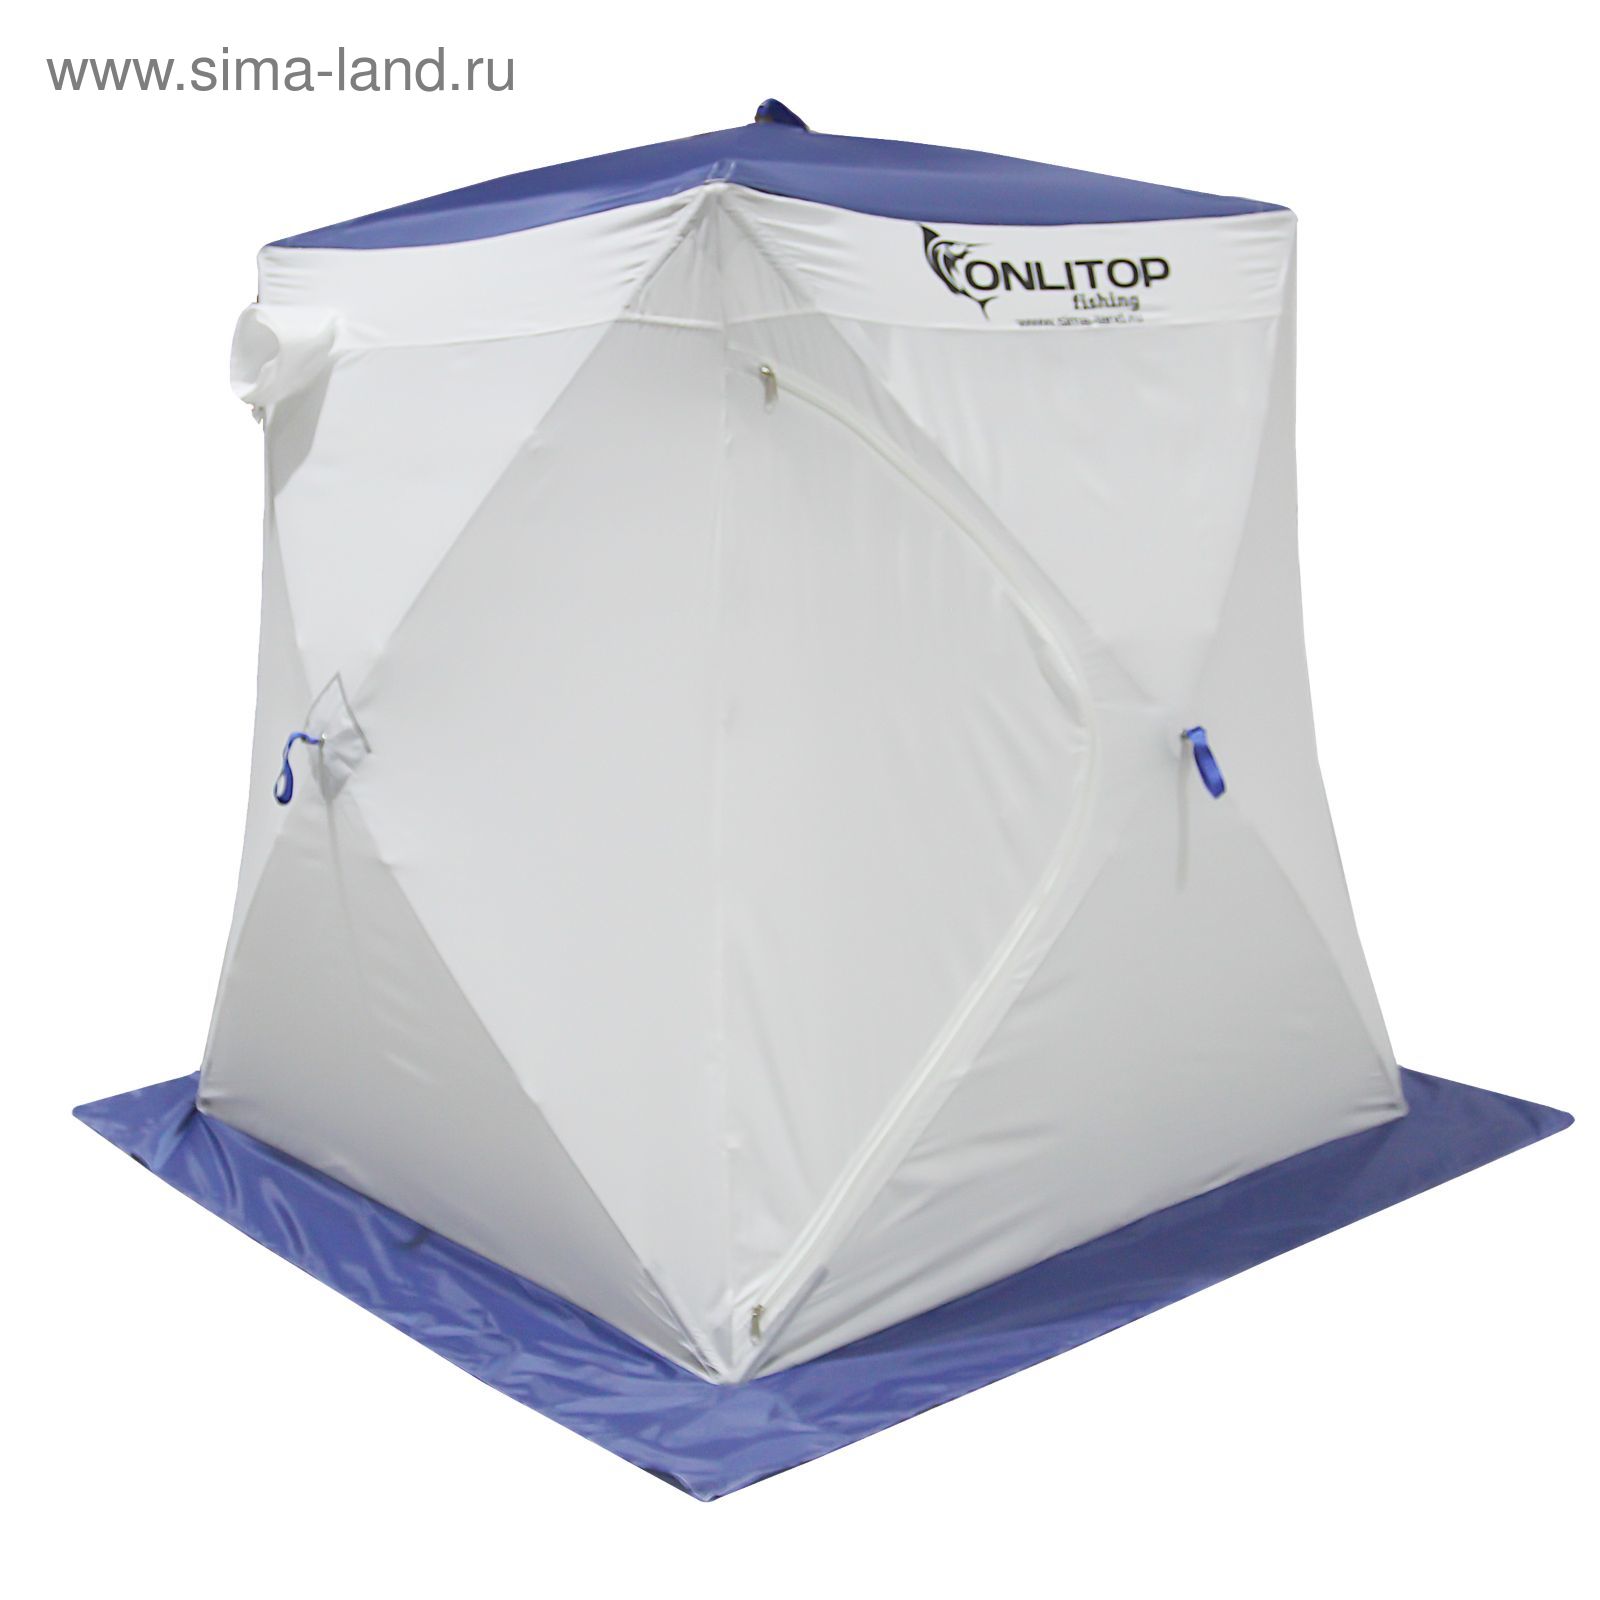 Палатка "Призма Стандарт" 150, 2-слойная, цвет бело-синий